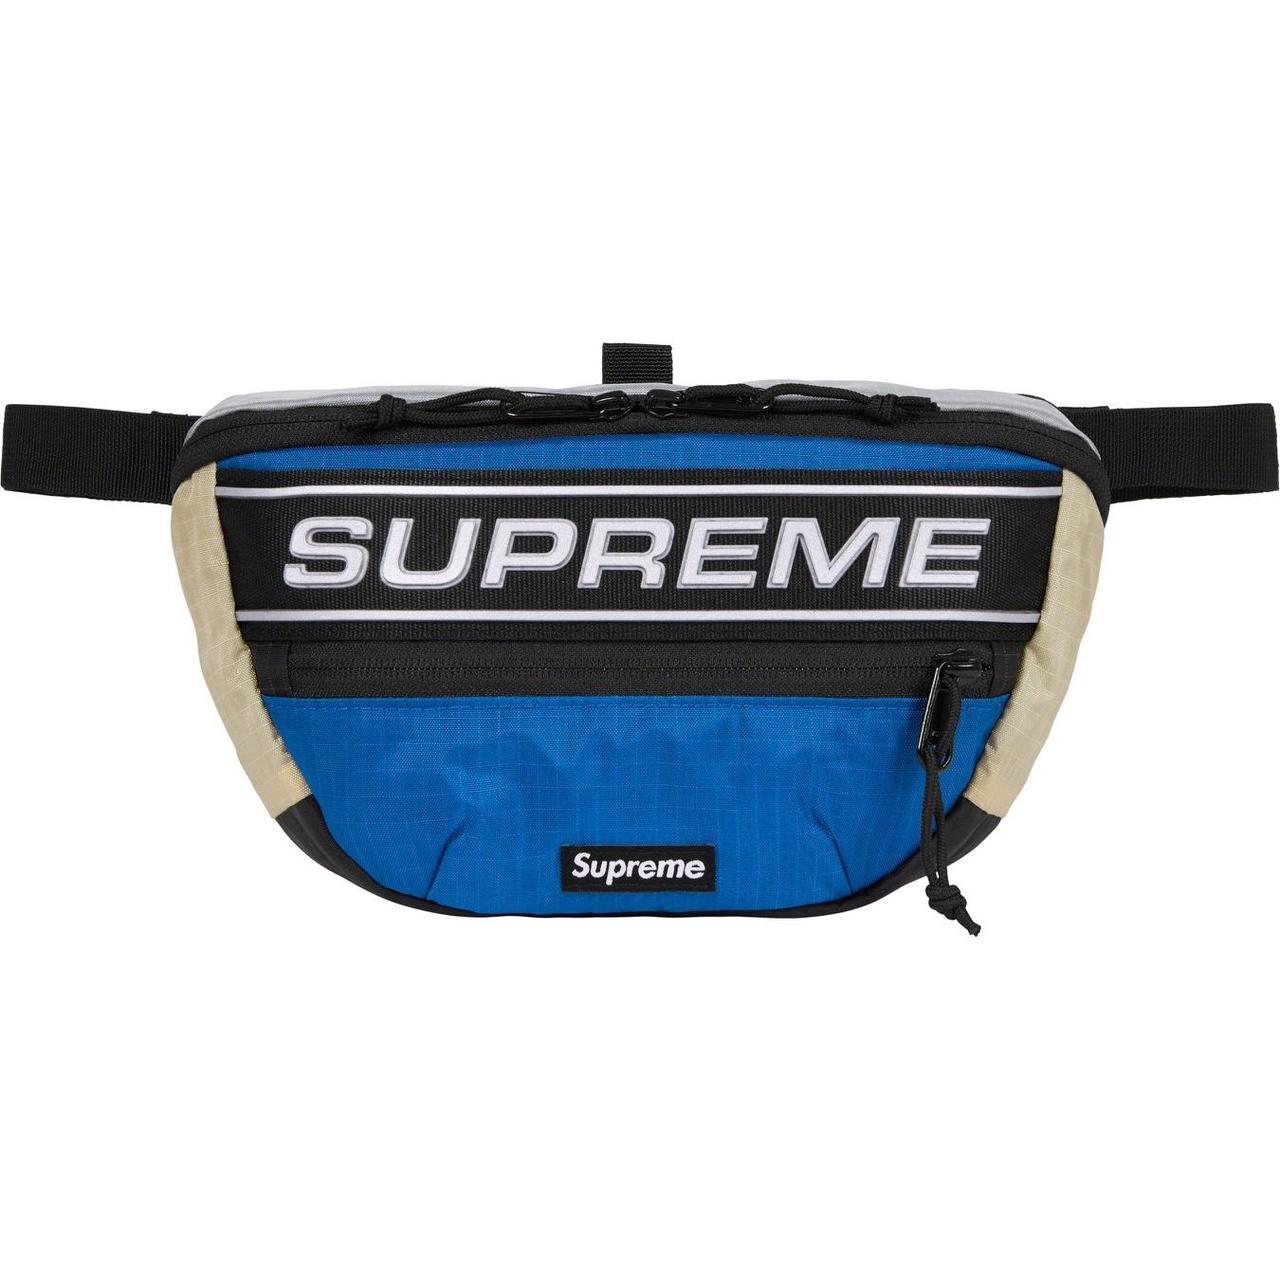 Supreme Harness Waist Bag #Hype #Supreme #Bag - Depop